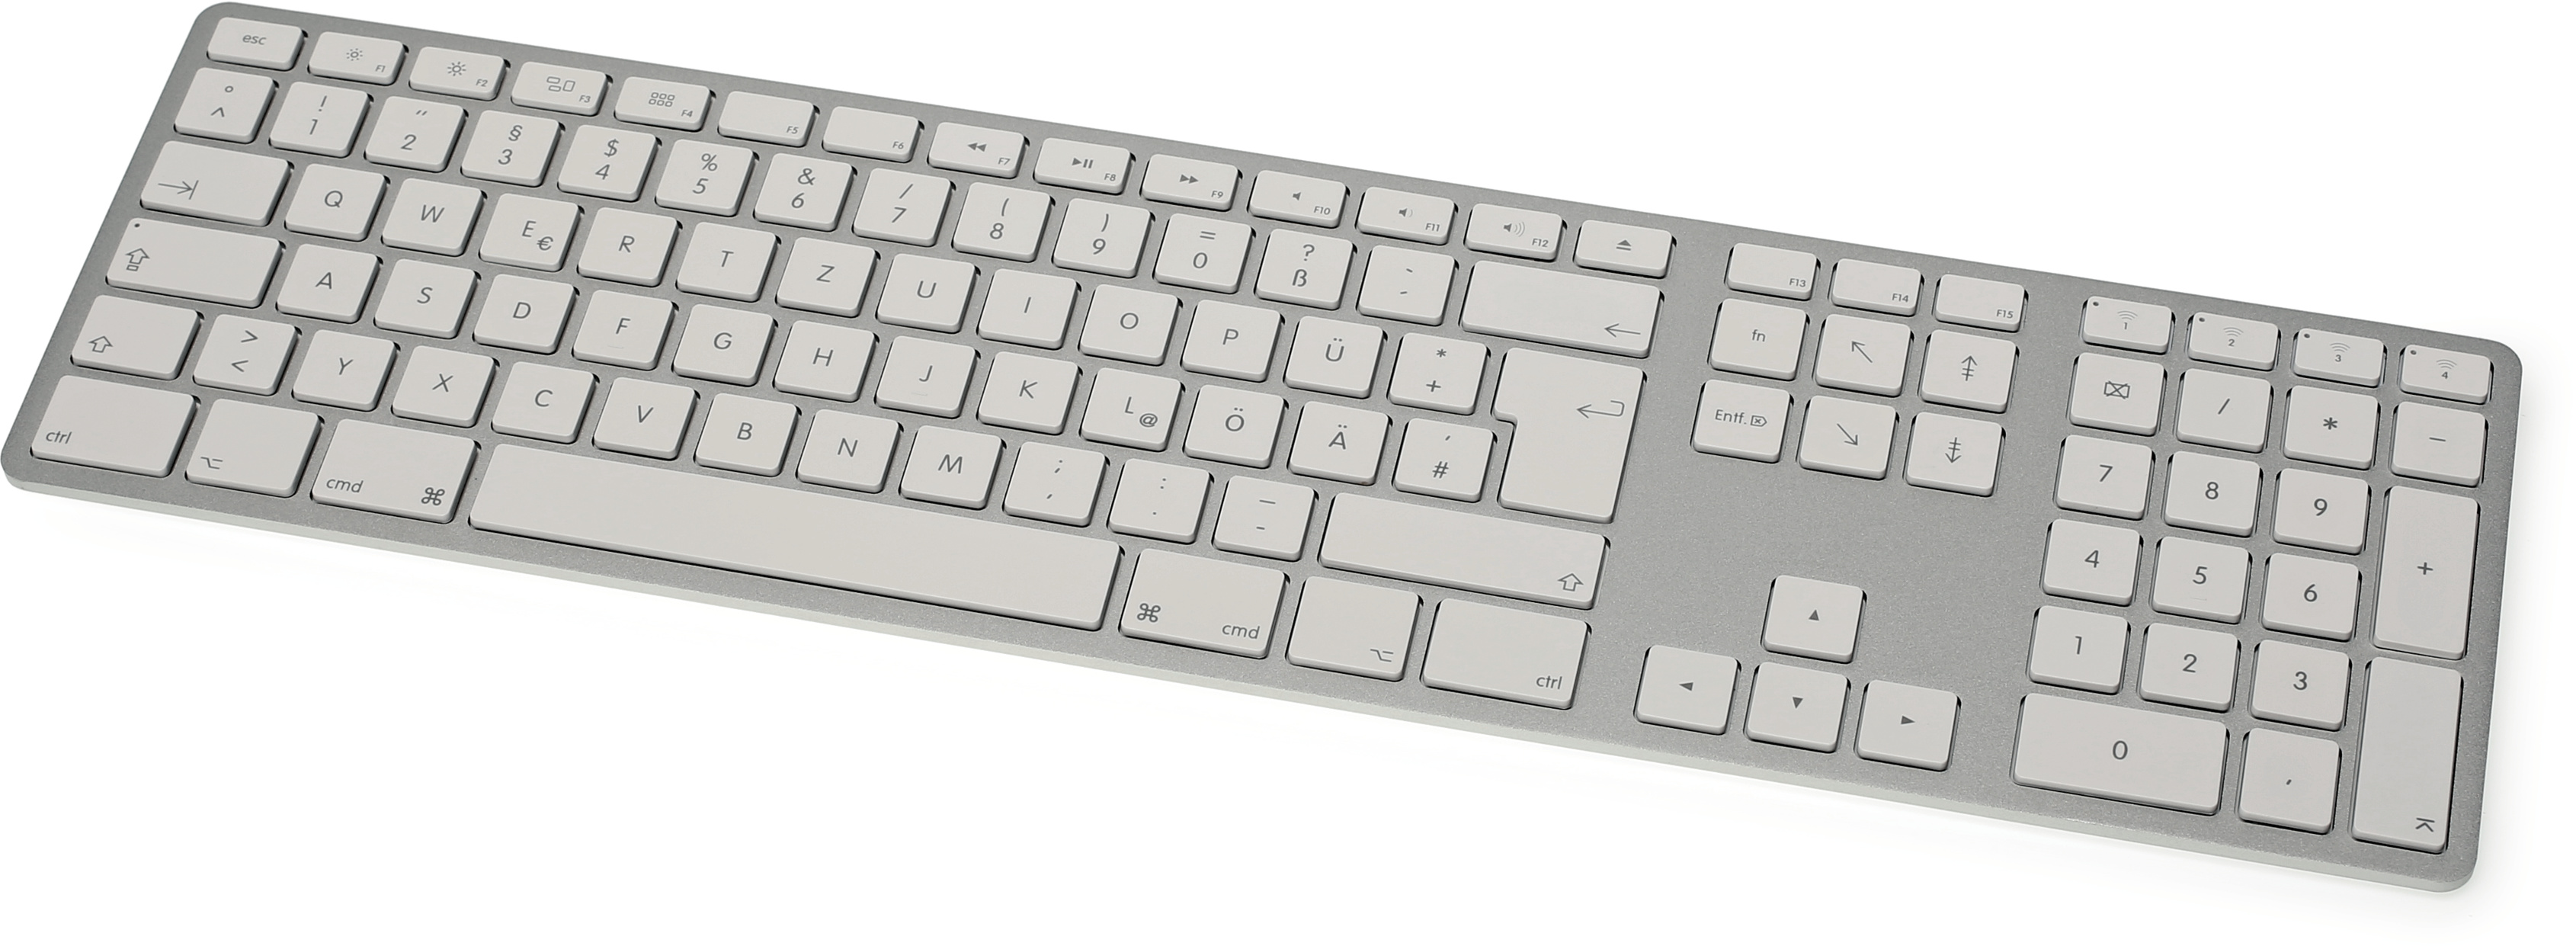 Multi-Tastatur | Mac & i | Heise Magazine